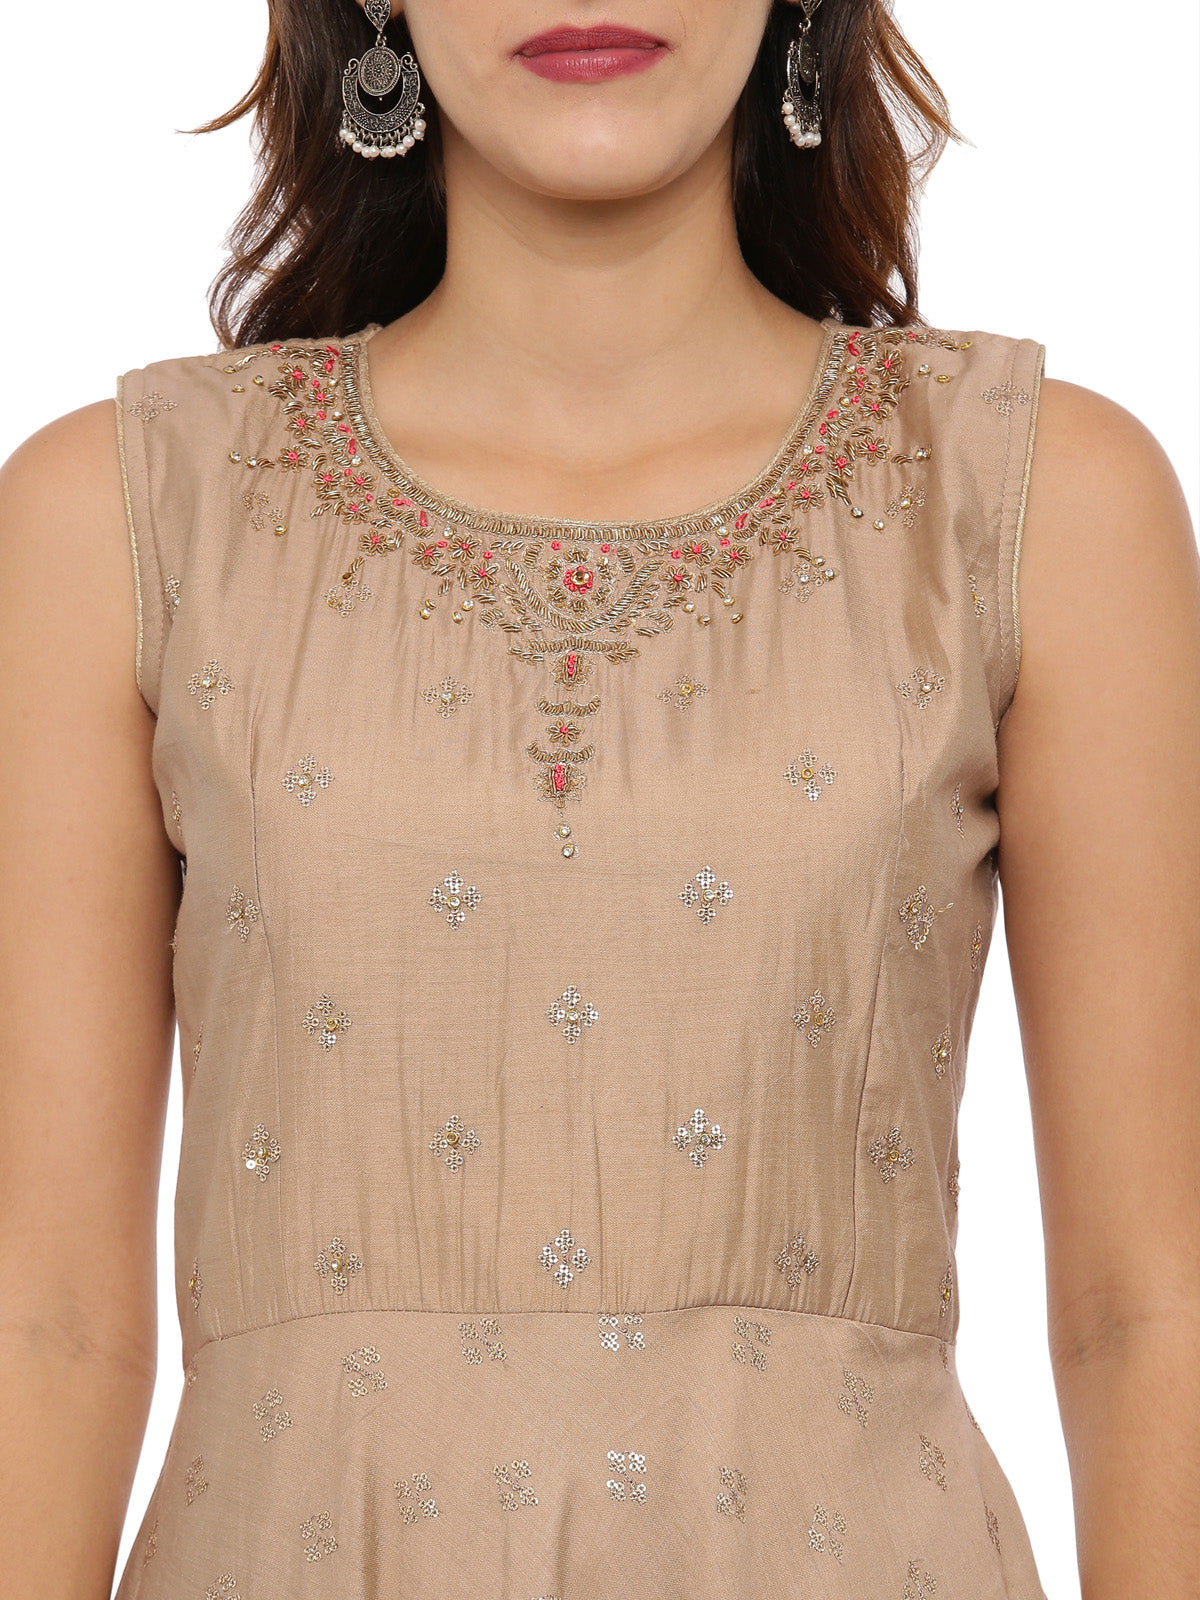 Neeru'S L Brown Color,Silk Fabric Suit-Anarkali